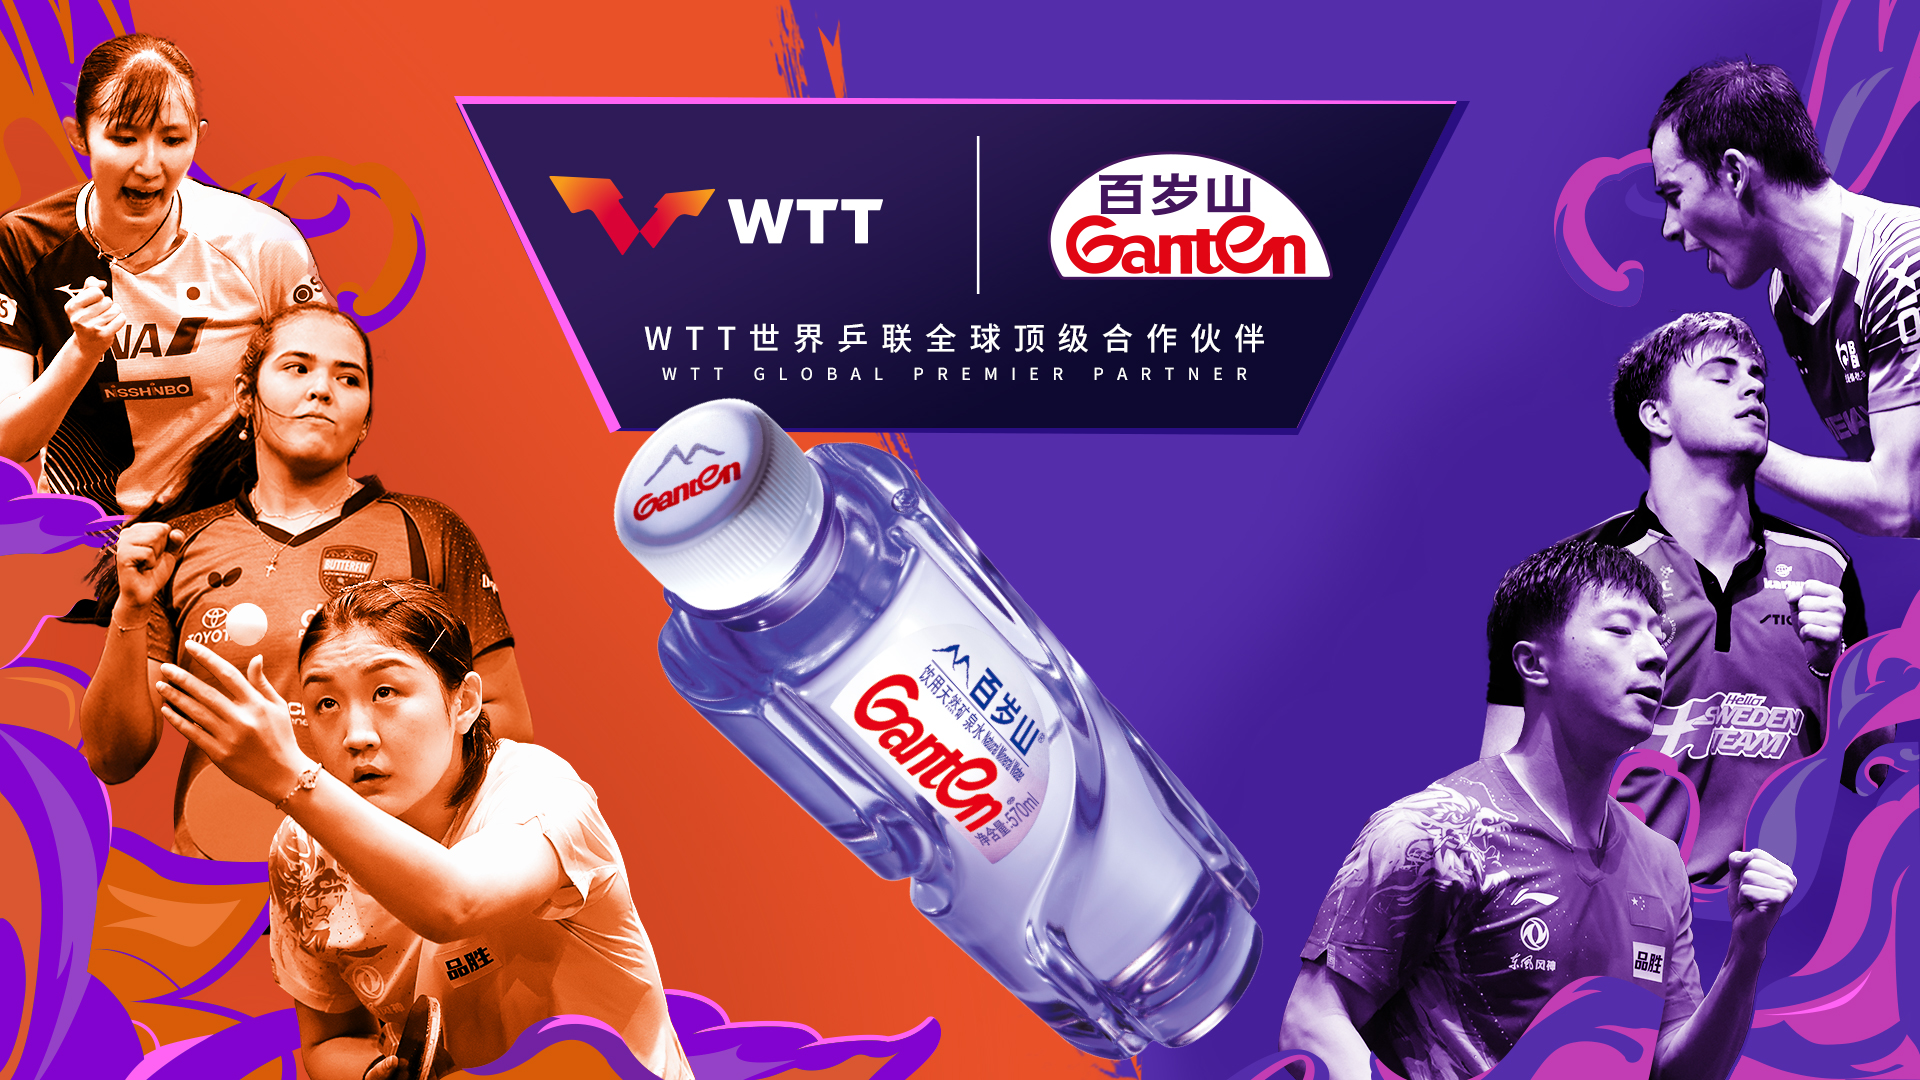 【Official announcement】Ganten becomes WTT global premier partner